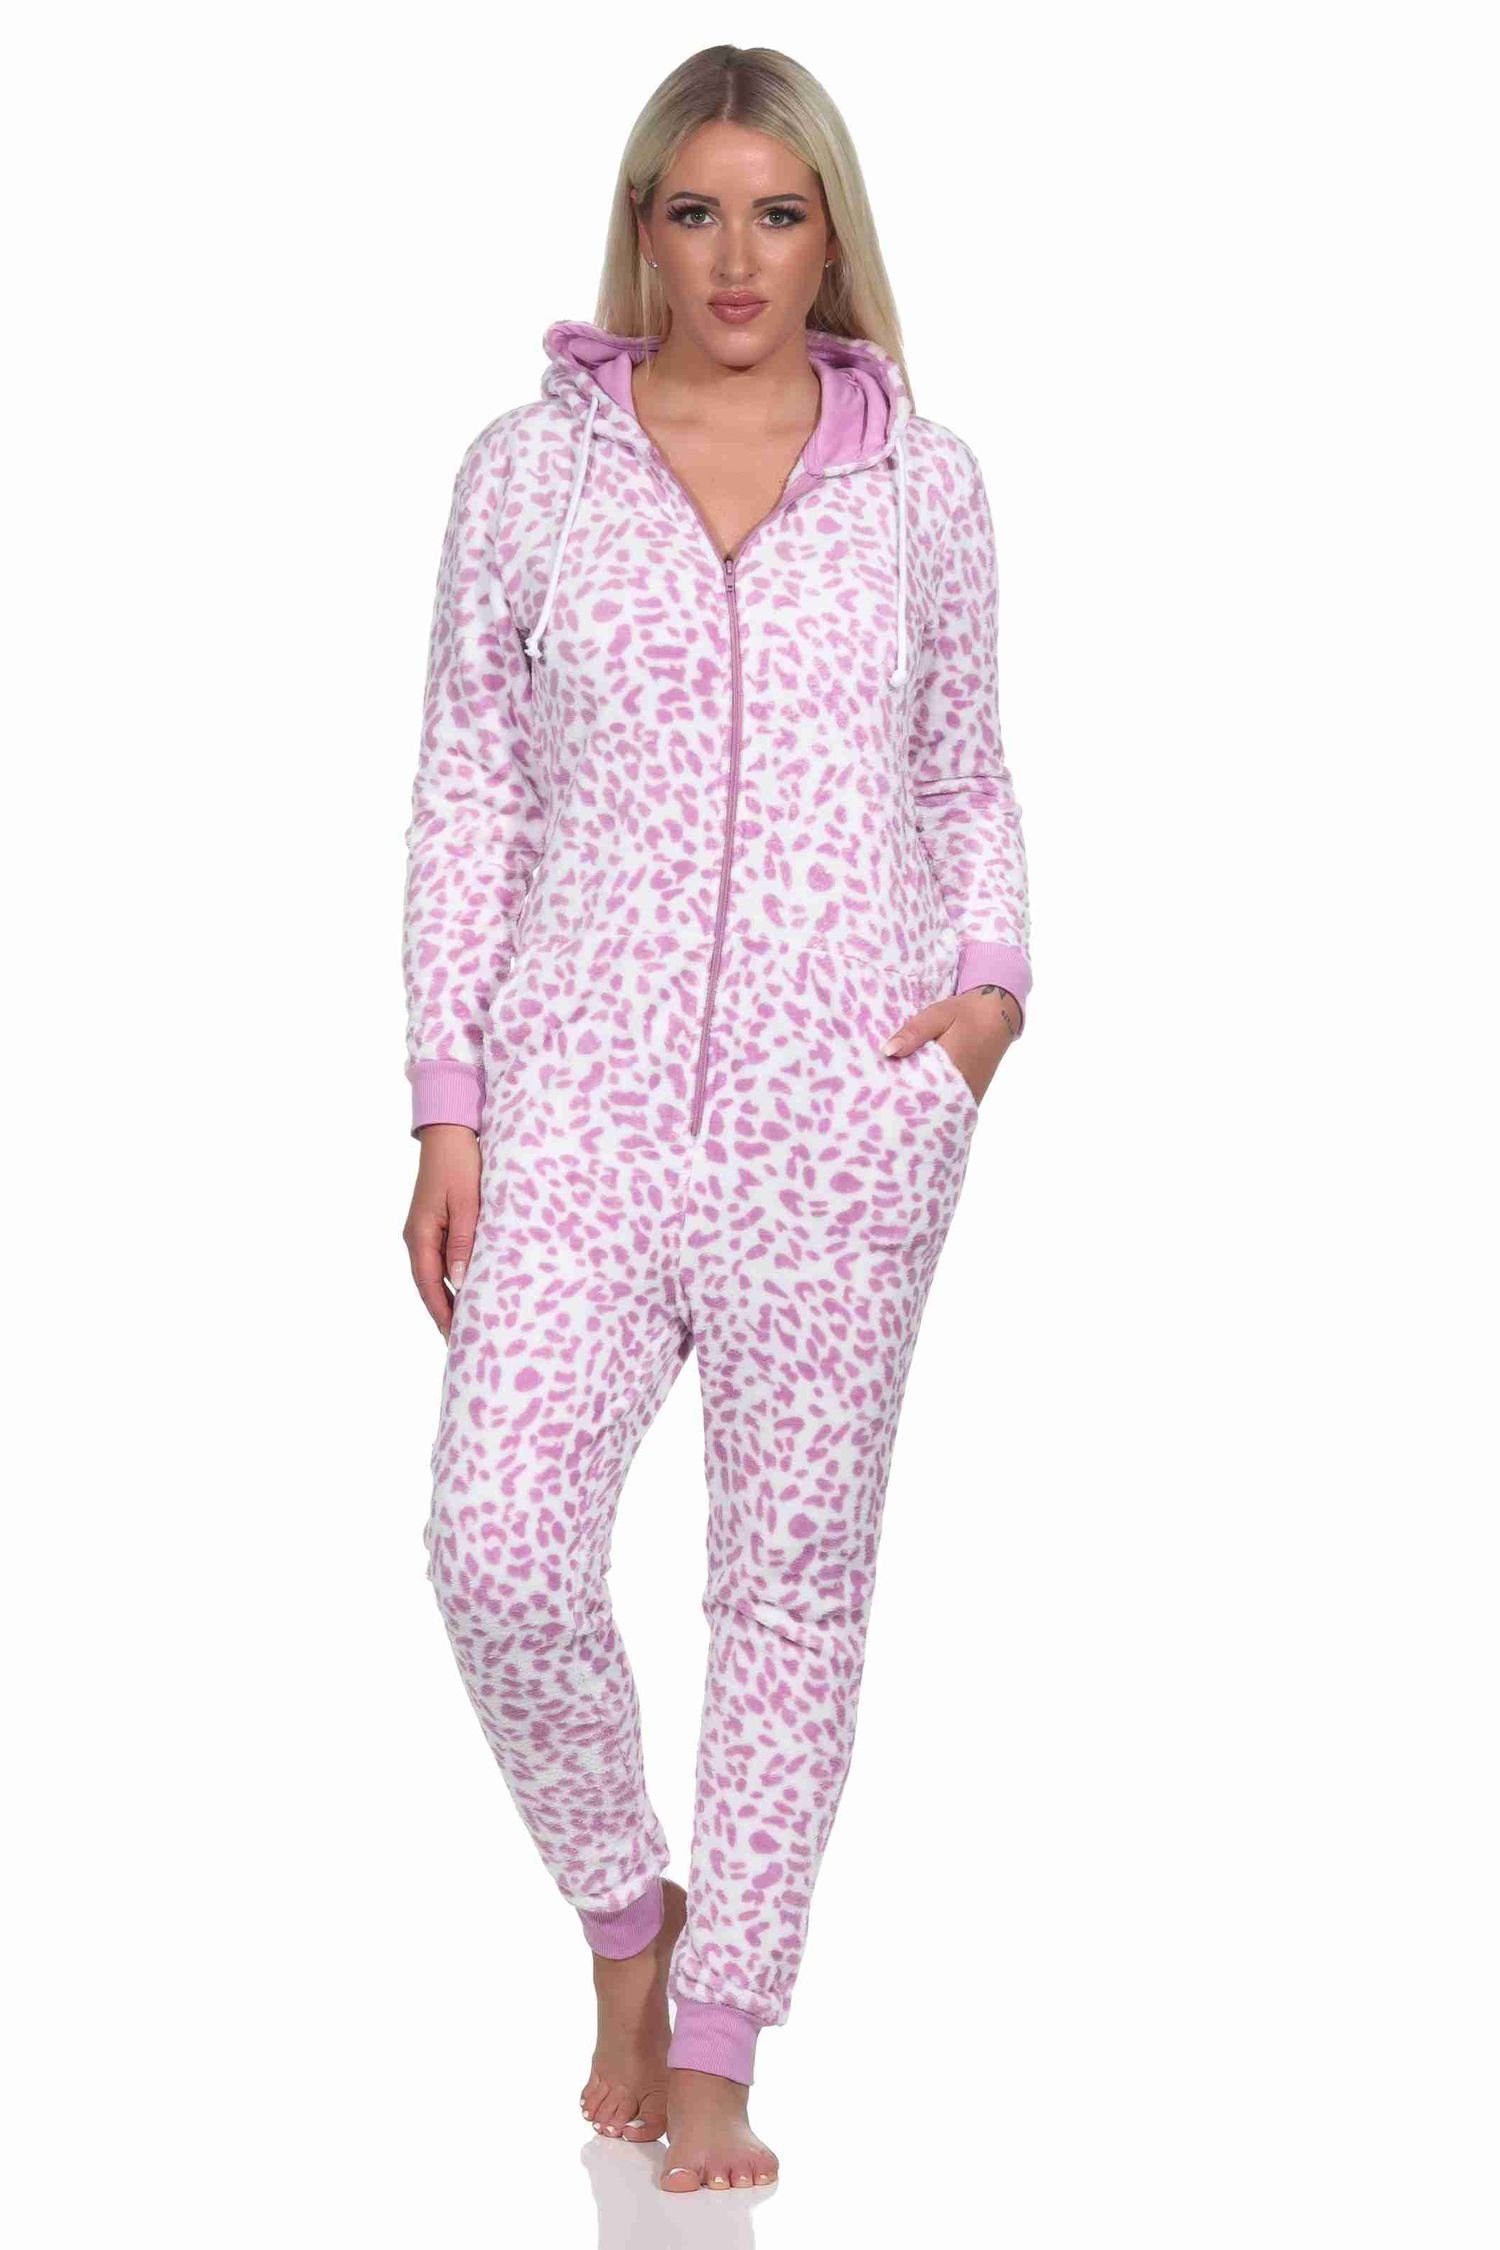 Coralfleece Pyjama Overall aus pink Jumpsuit Schlafanzug Einteiler Normann Damen